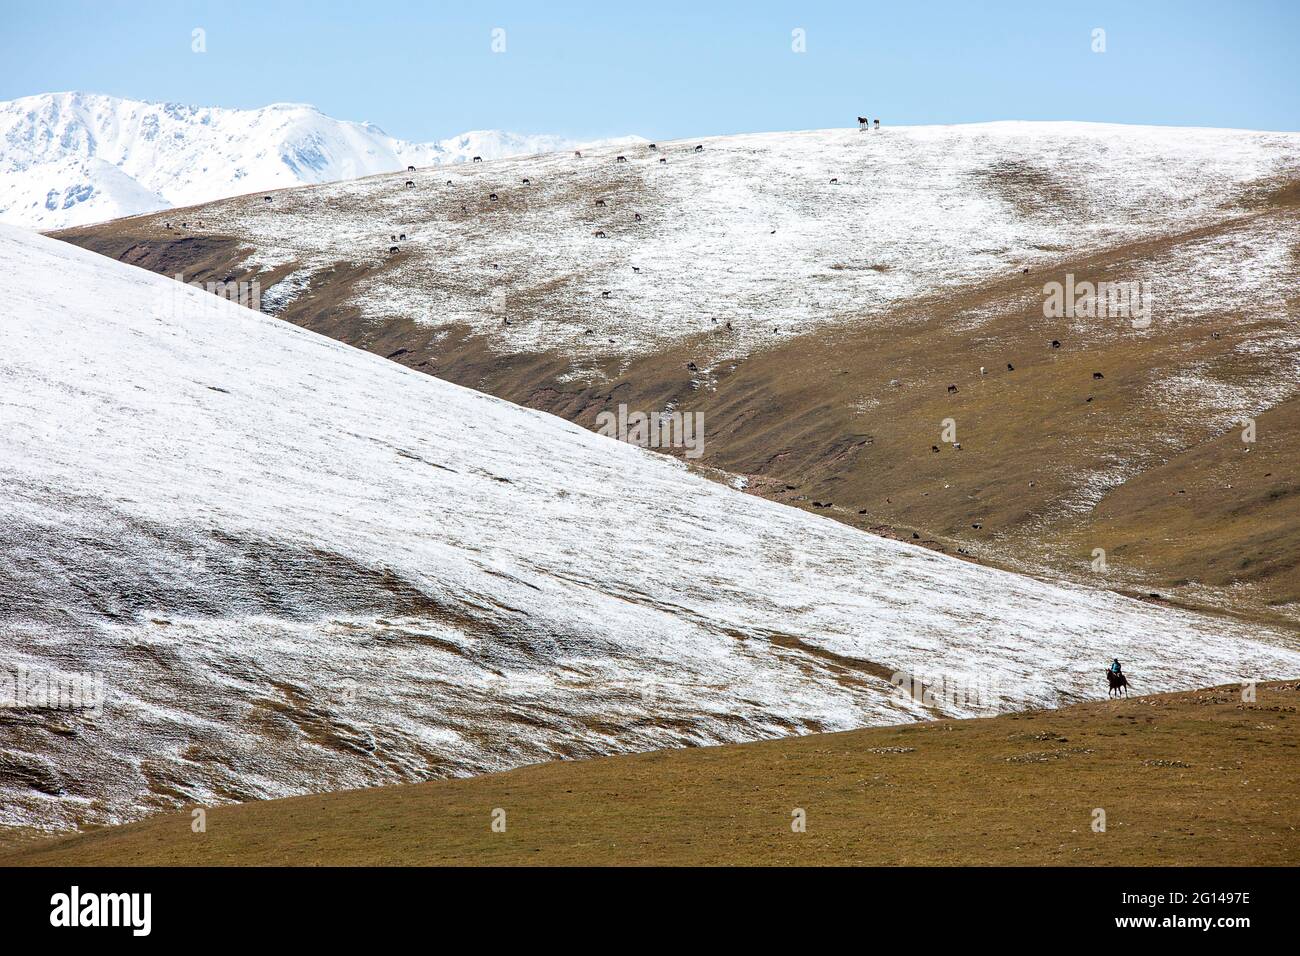 Vue sur le plateau d'Assy où les nomades passent l'été, près d'Almaty, Kazakhstan Banque D'Images